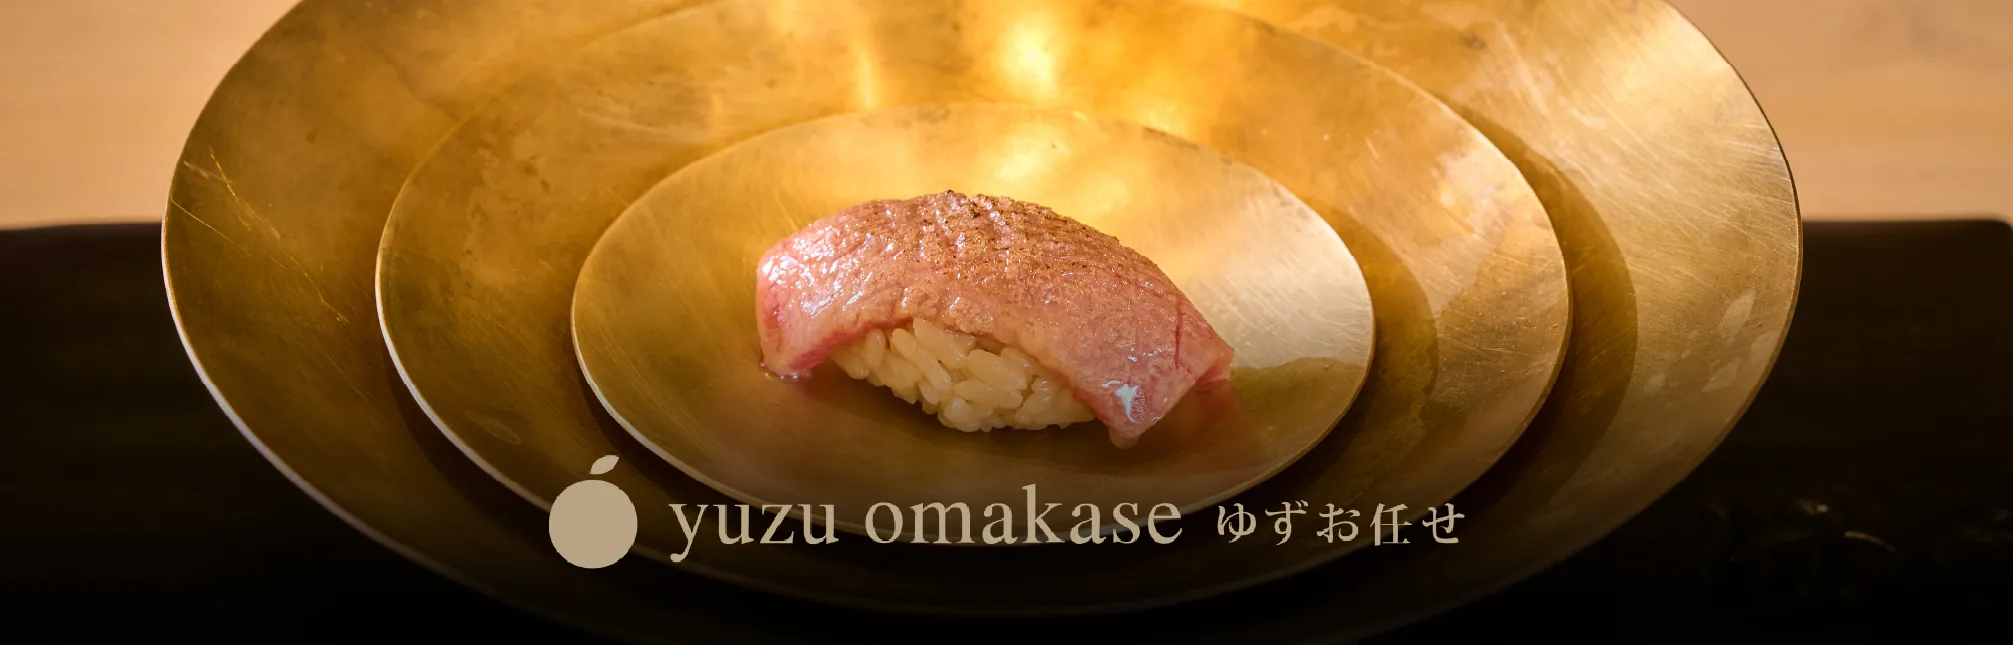 Omakase's Seafood